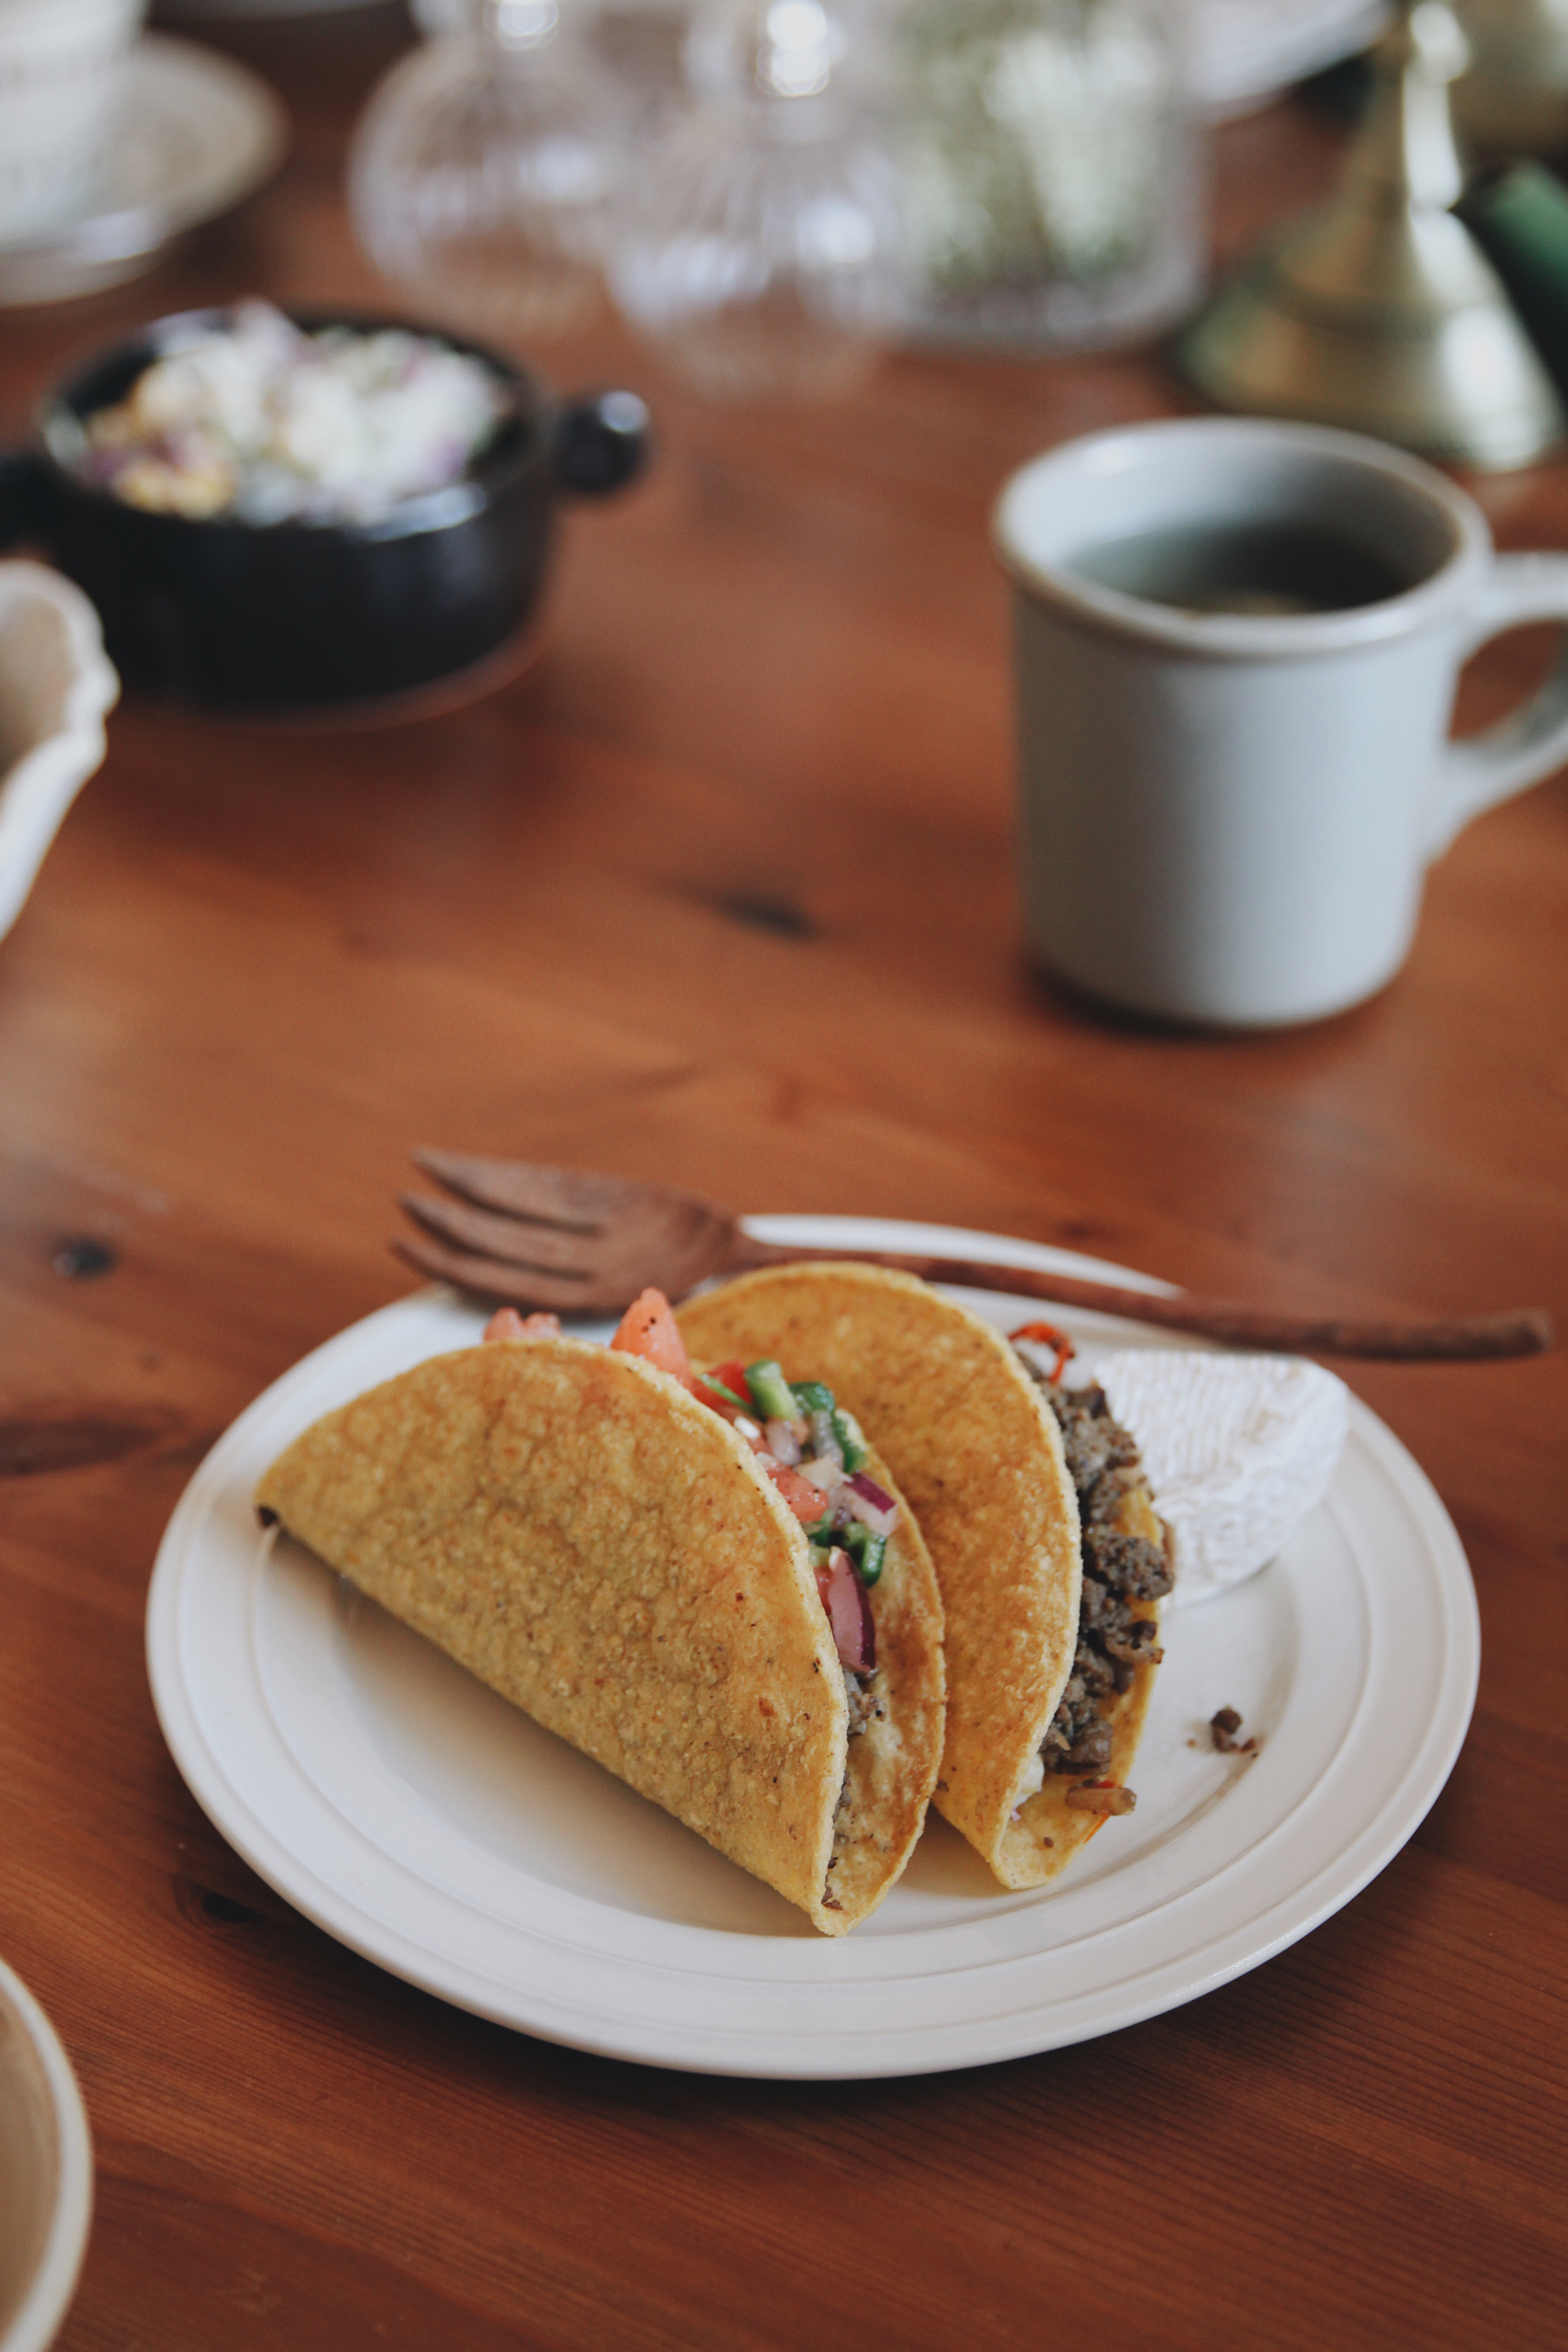 经典墨西哥牛肉塔可Taco Tuesday٩˃̶͈̀௰˂̶͈́و｜夏日轻食#Healthymeals#